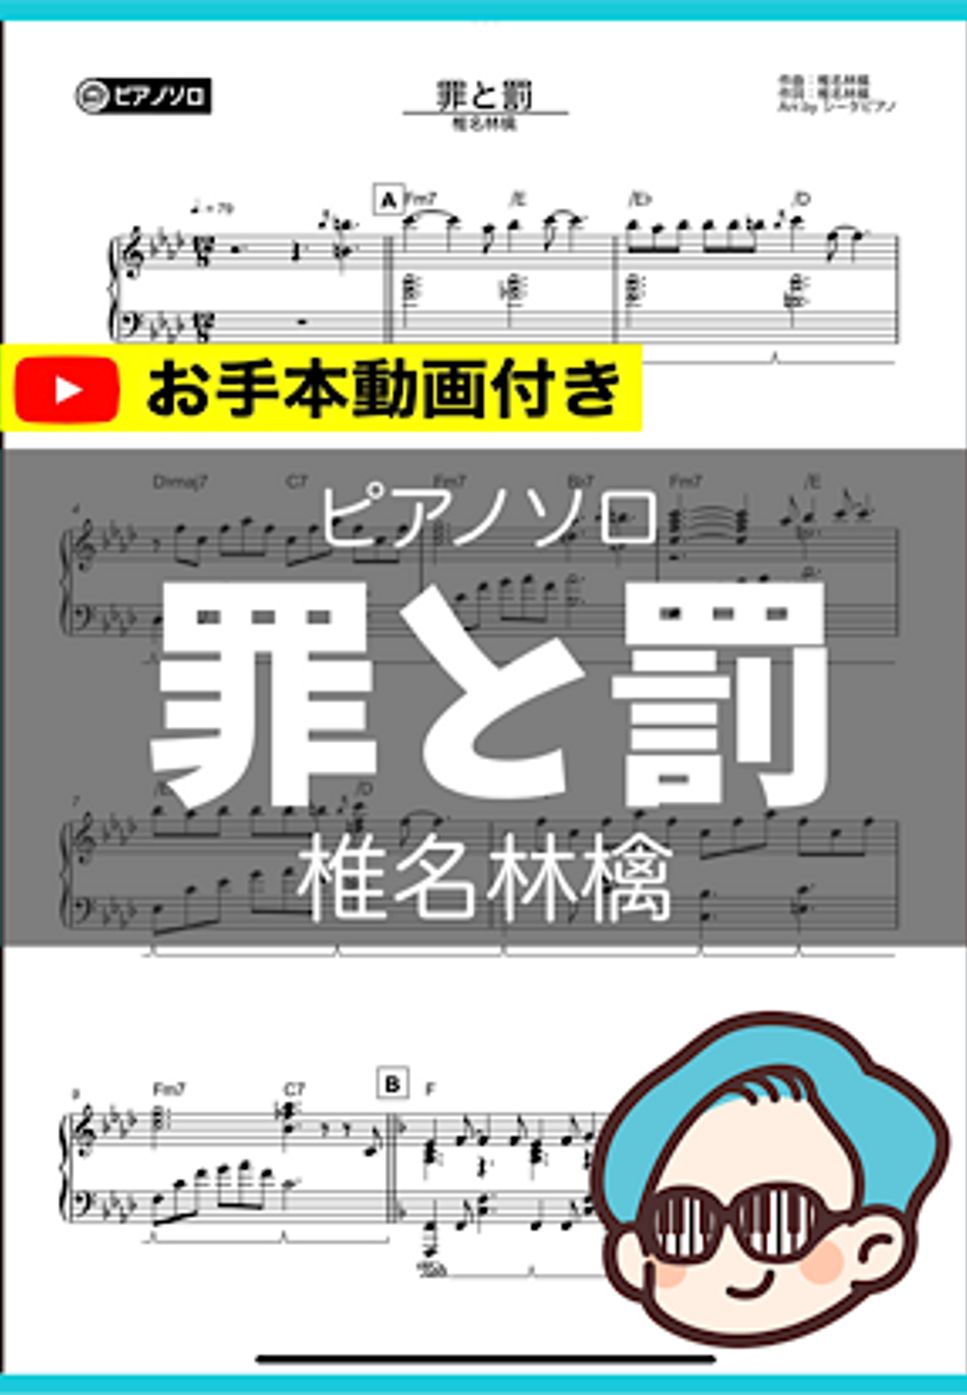 椎名林檎 - 罪と罰 by シータピアノ